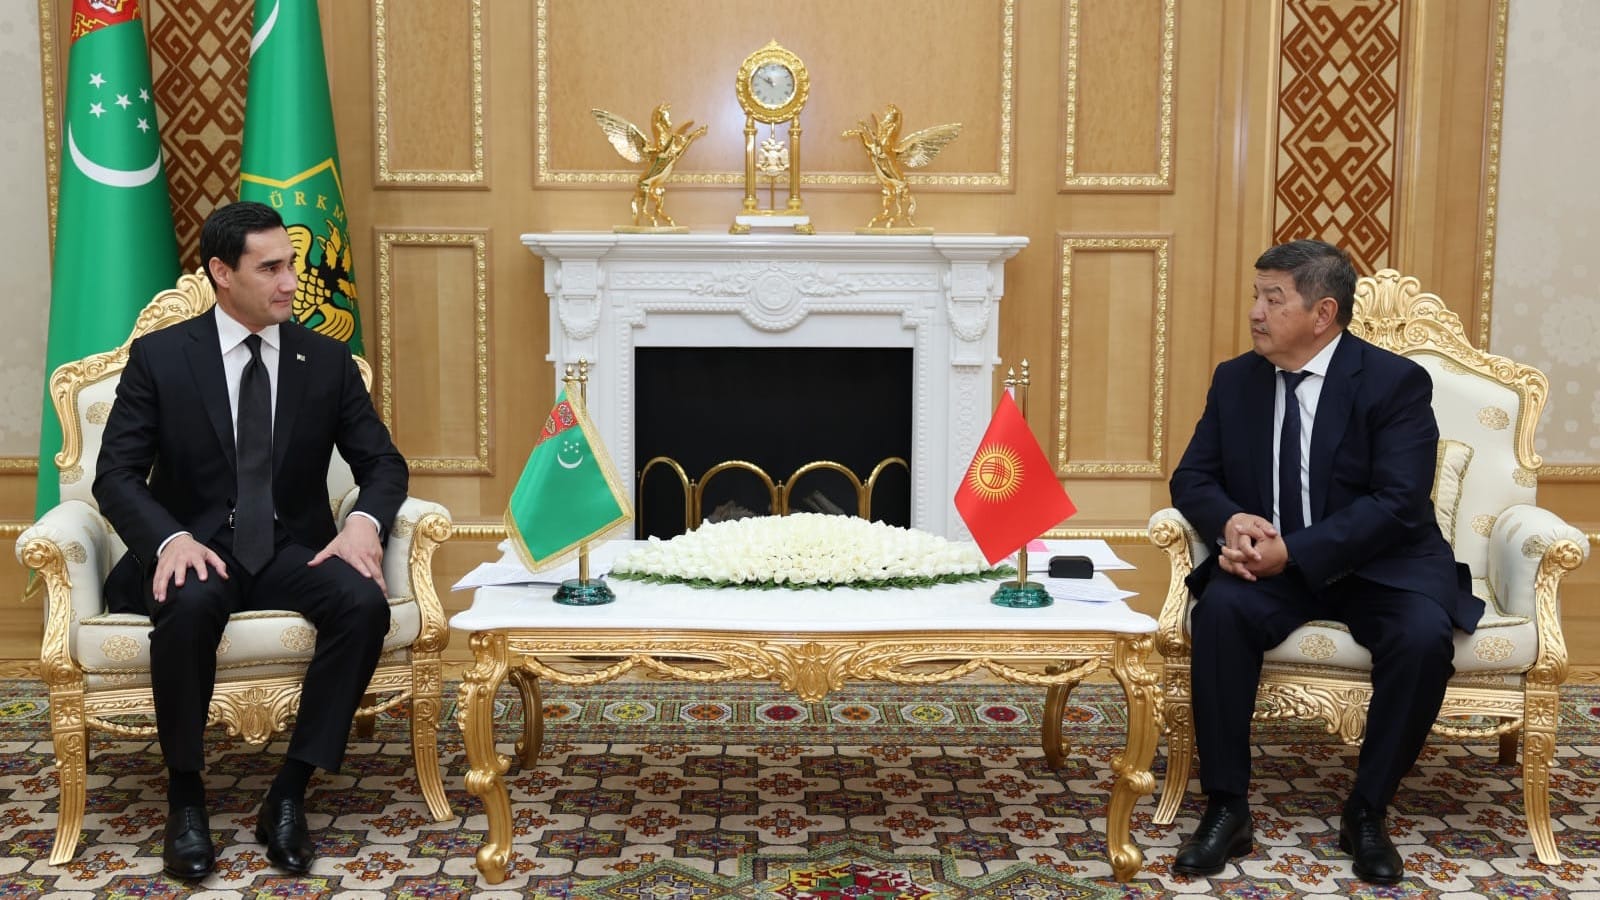 Акылбек Жапаров предложил президенту Туркменистана задействовать весь потенциал сотрудничества